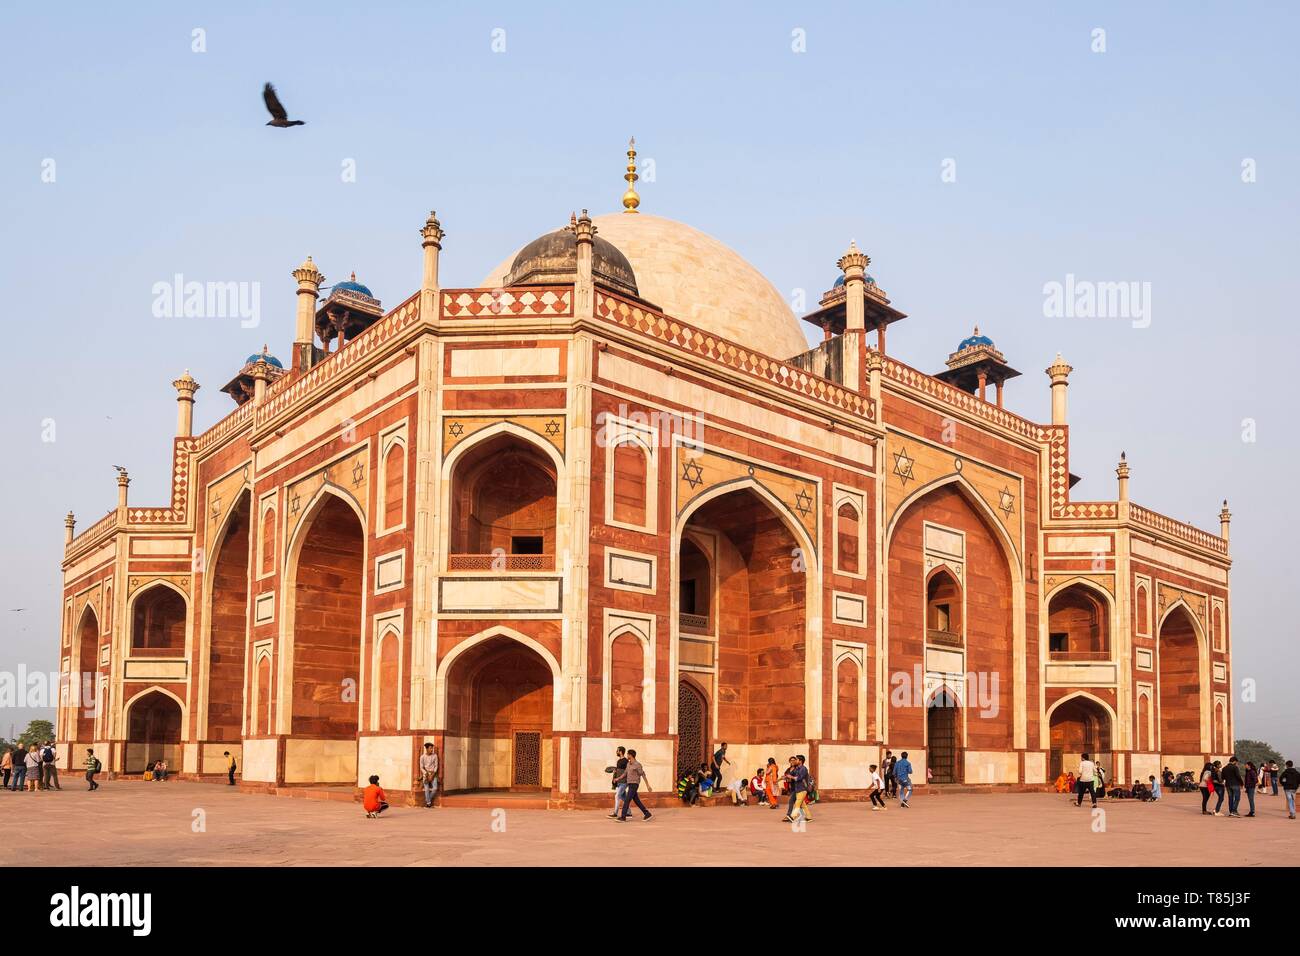 L'Inde, New Delhi, Tombe de Humayun, l'architecture moghole, complexe du patrimoine mondial de l'UNESCO, 16e siècle Tombe de Humayun Banque D'Images